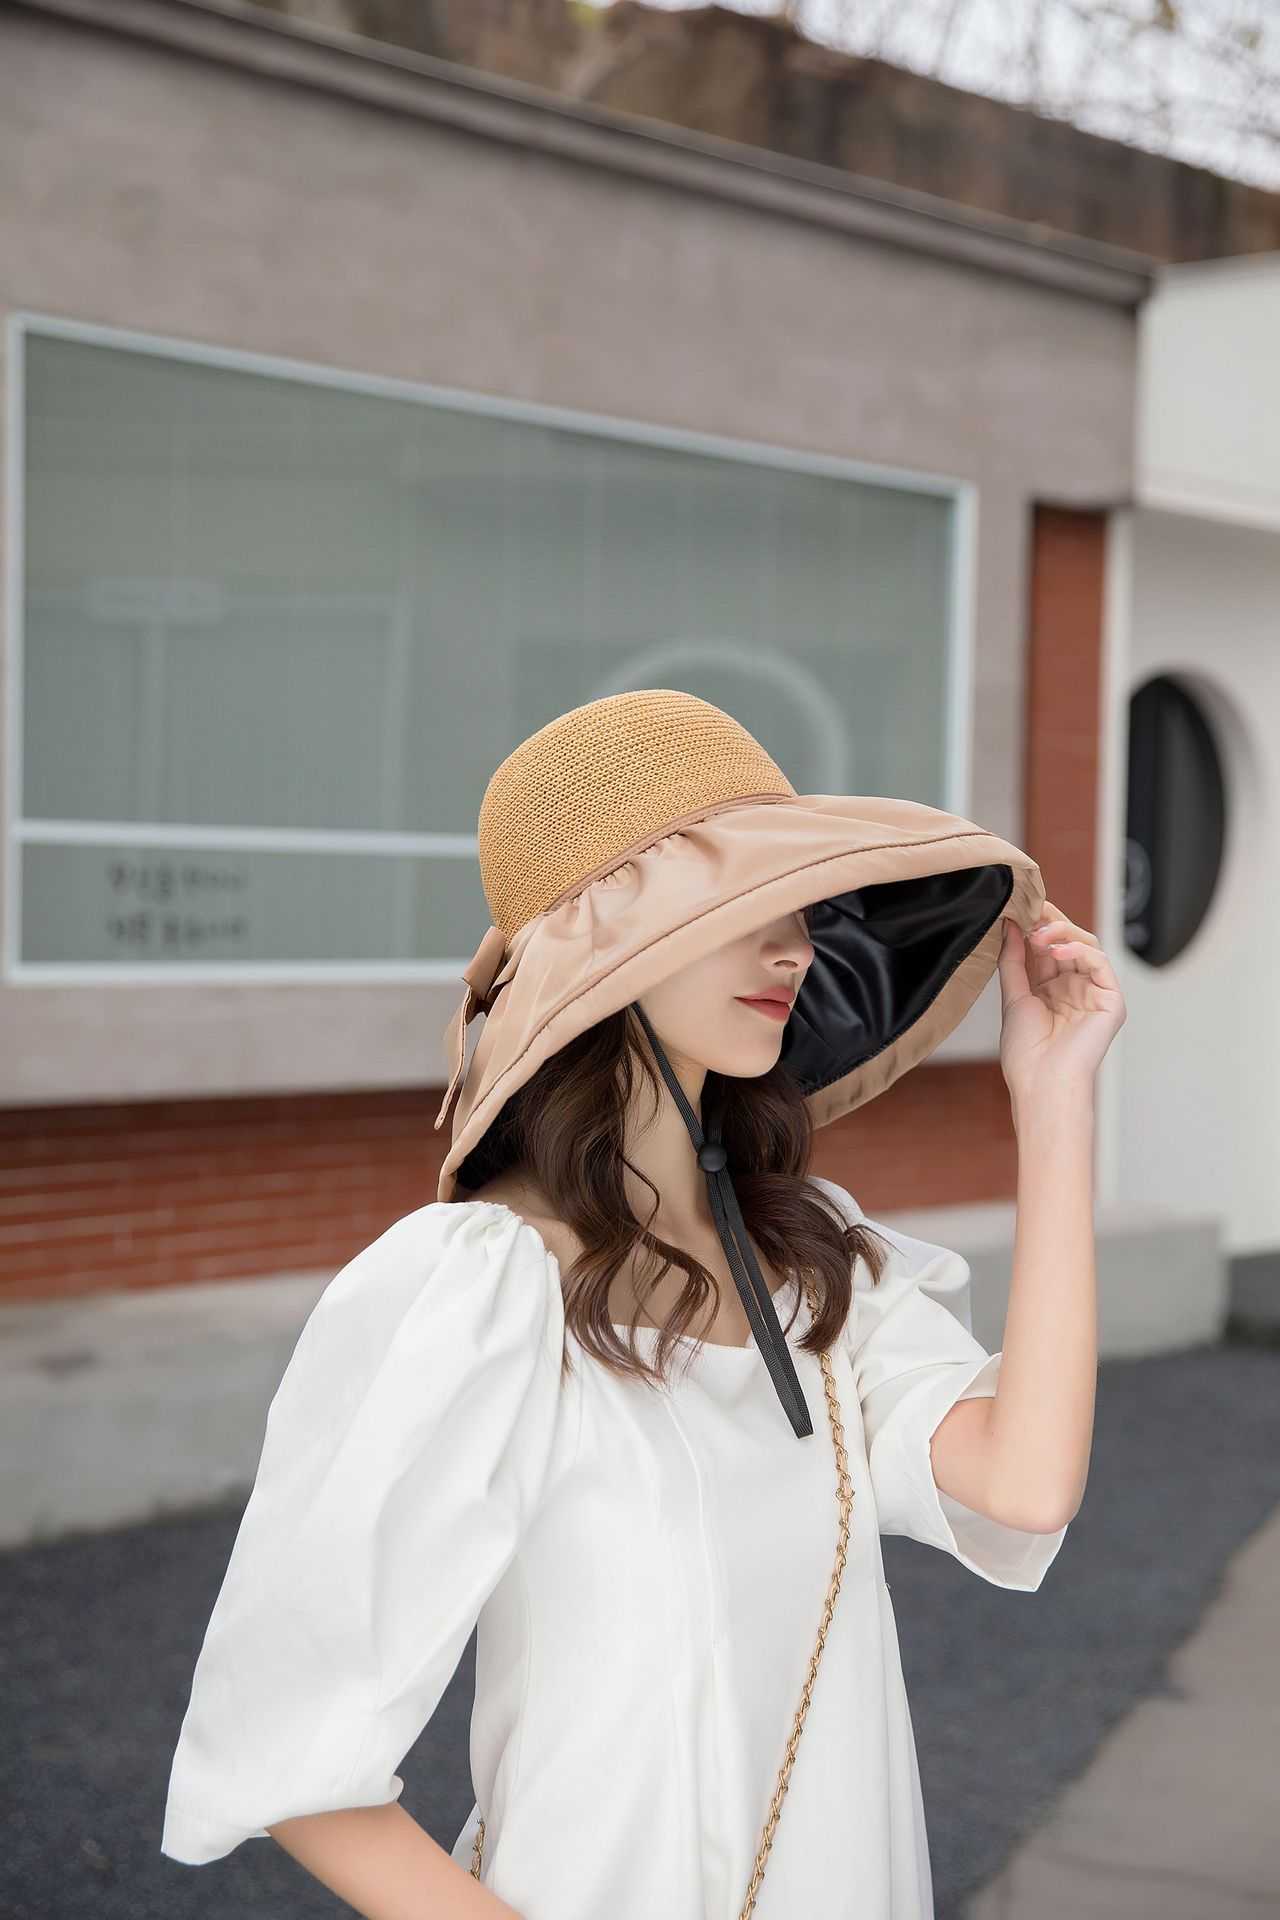 安い 激安 プチプラ 高品質 UVカット帽子 つば広帽子で日焼け対策 小顔効果 紫外線対策 ベージュ